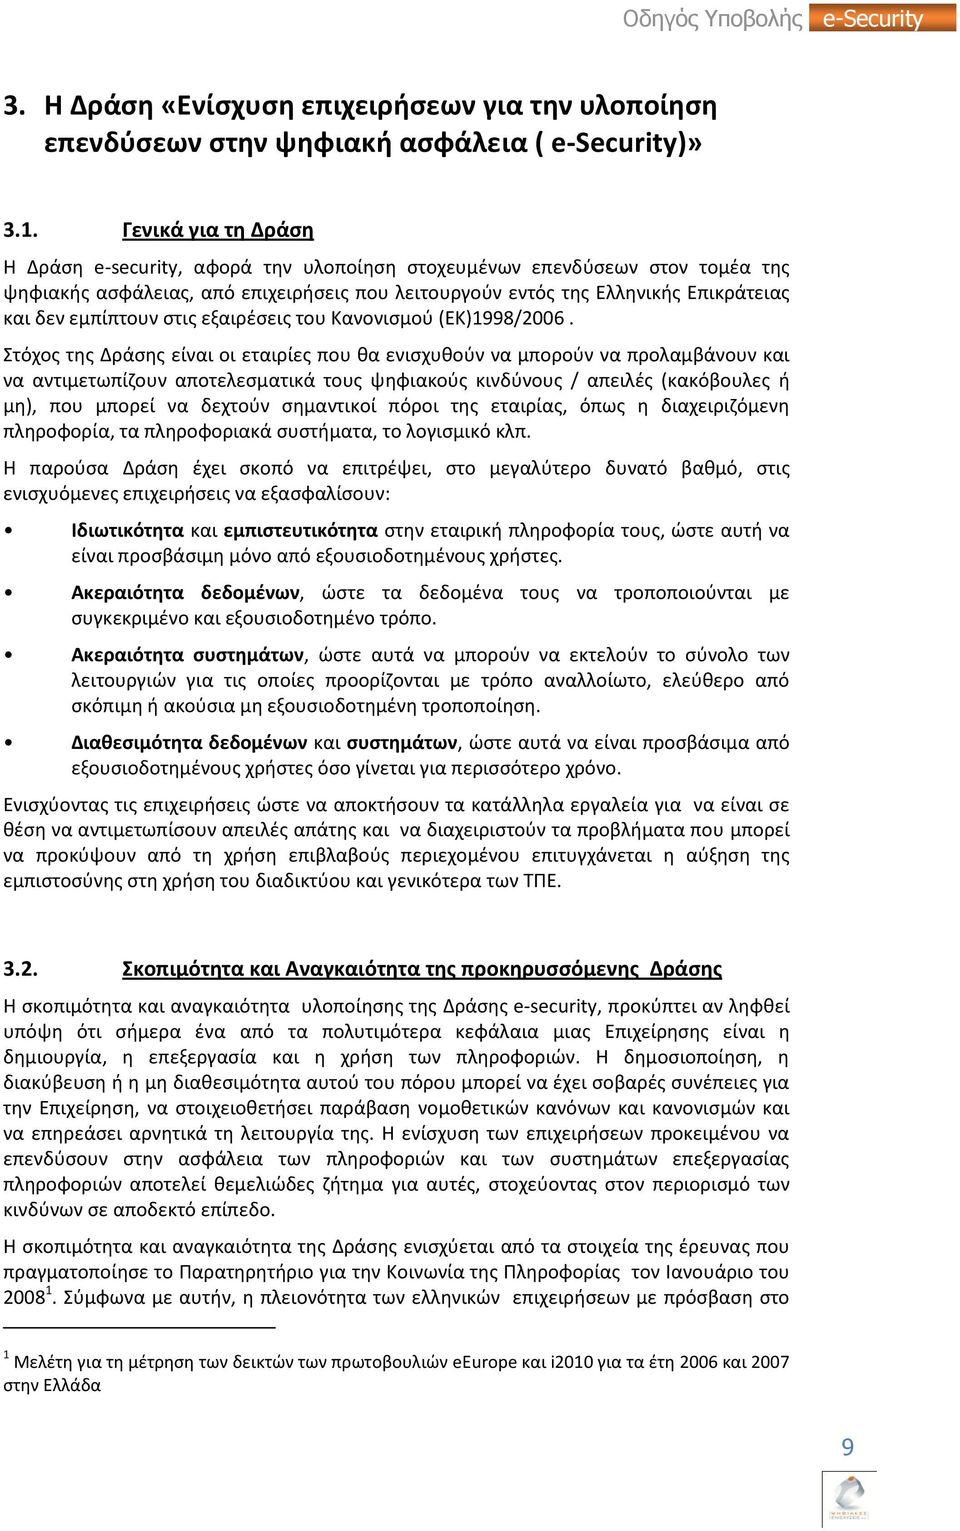 εμπίπτουν ςτισ εξαιρζςεισ του Κανονιςμοφ (ΕΚ)1998/2006.